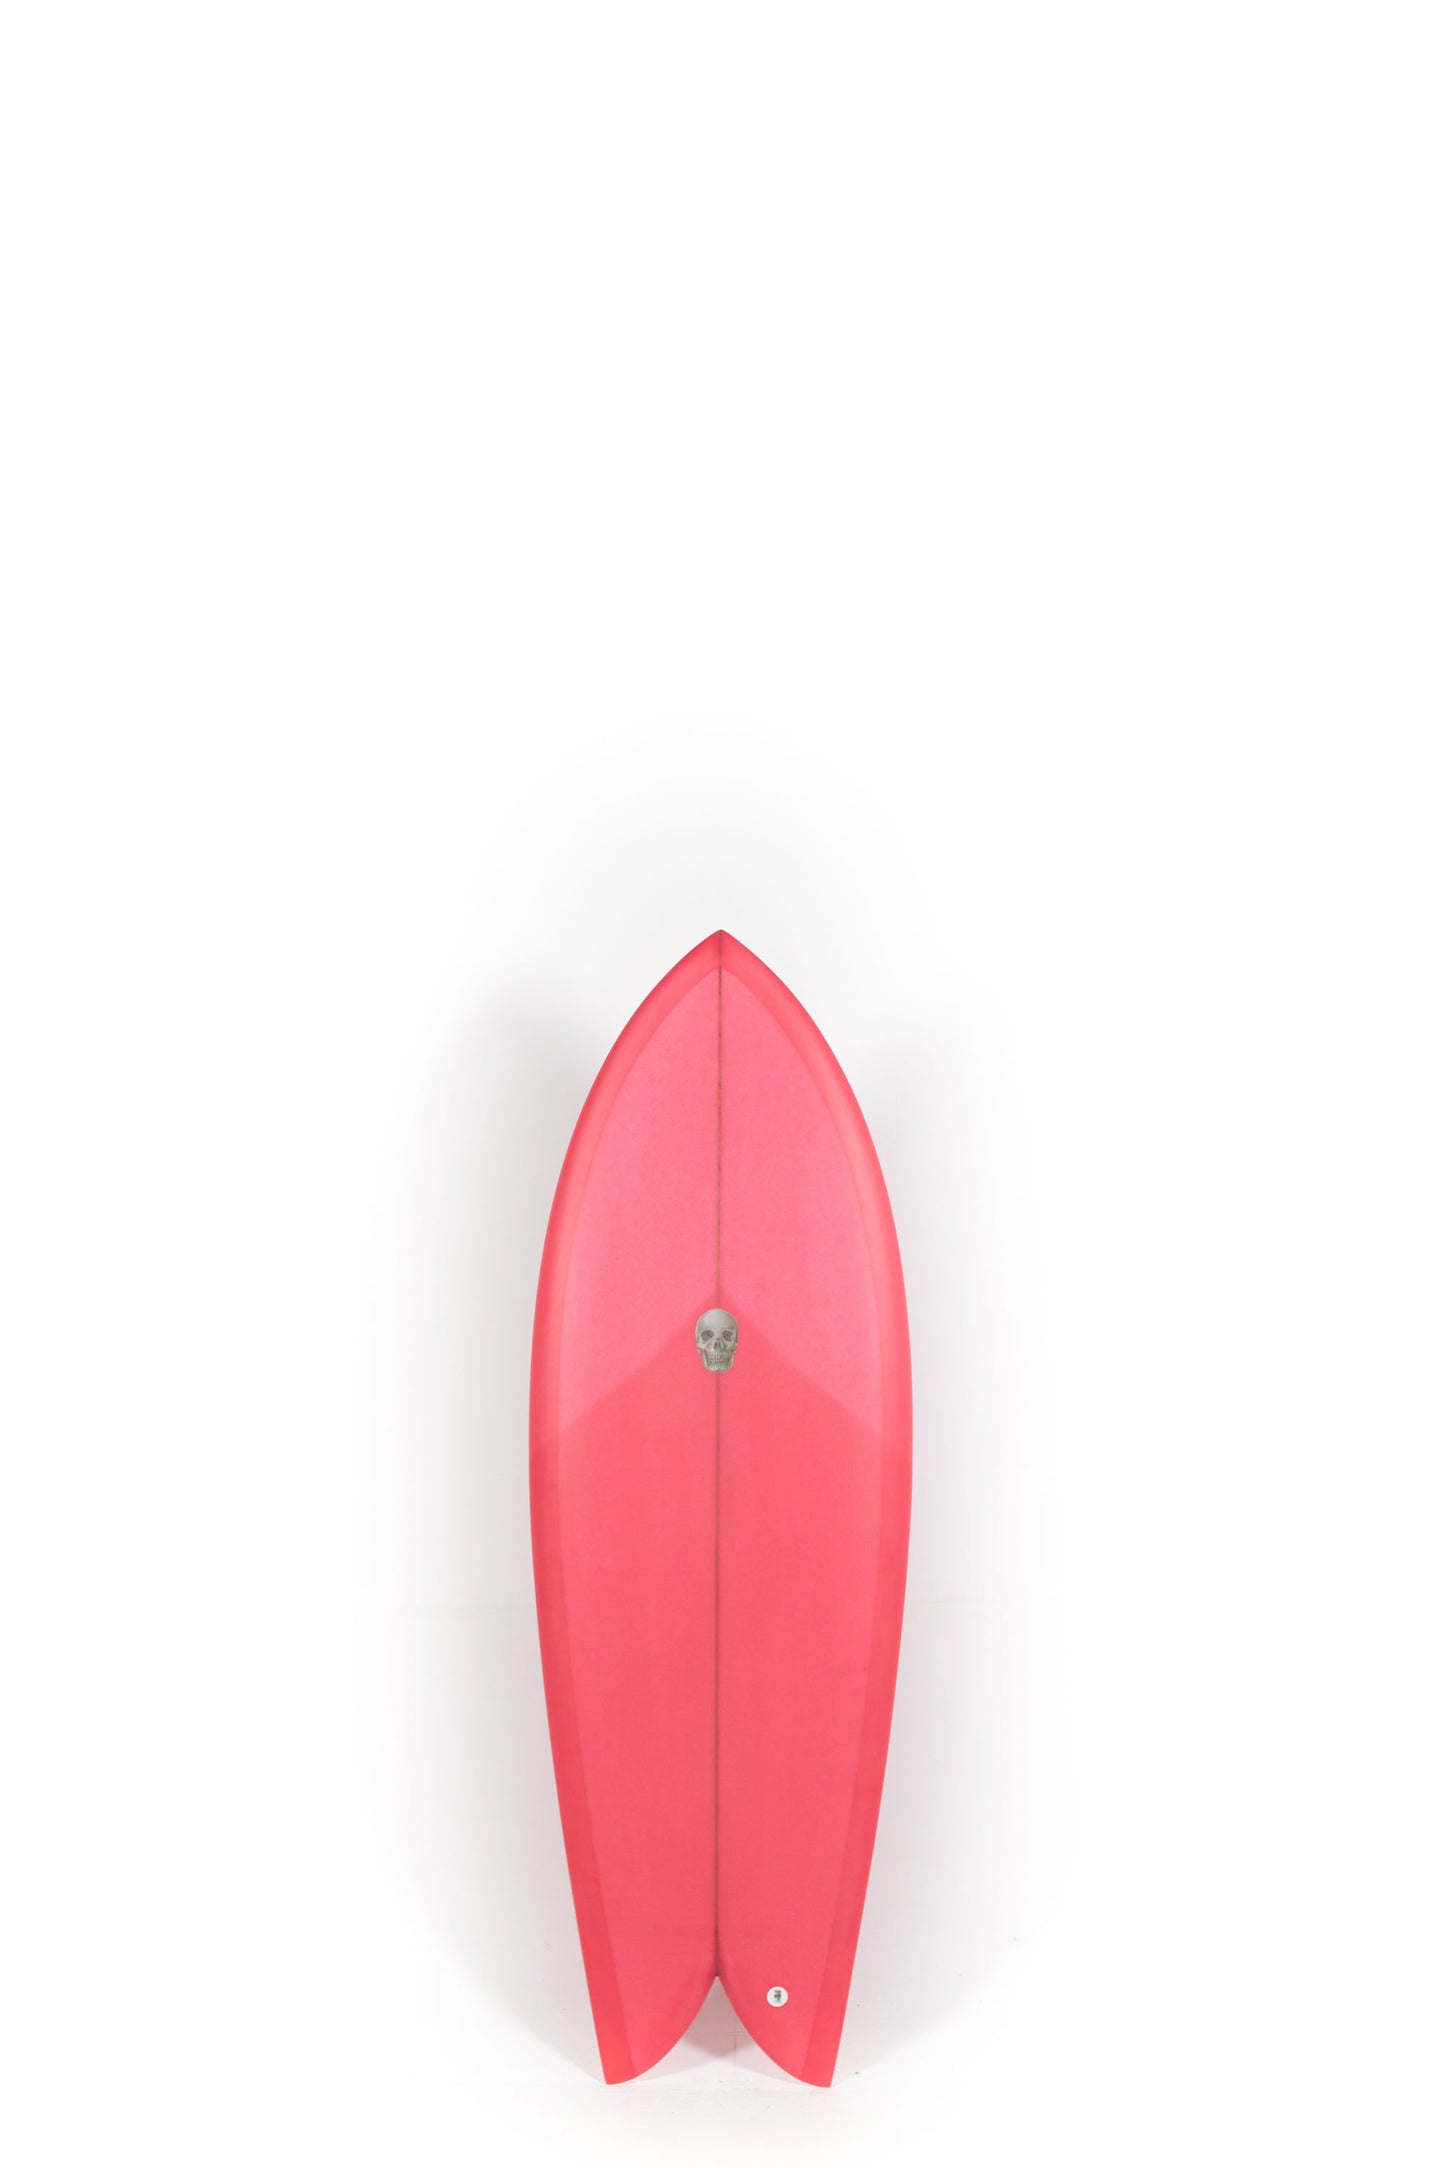 Pukas Surf Shop - Christenson Surfboards - CHRIS FISH - 5'2" x 20 1/2 x 2 5/16 - CX05003